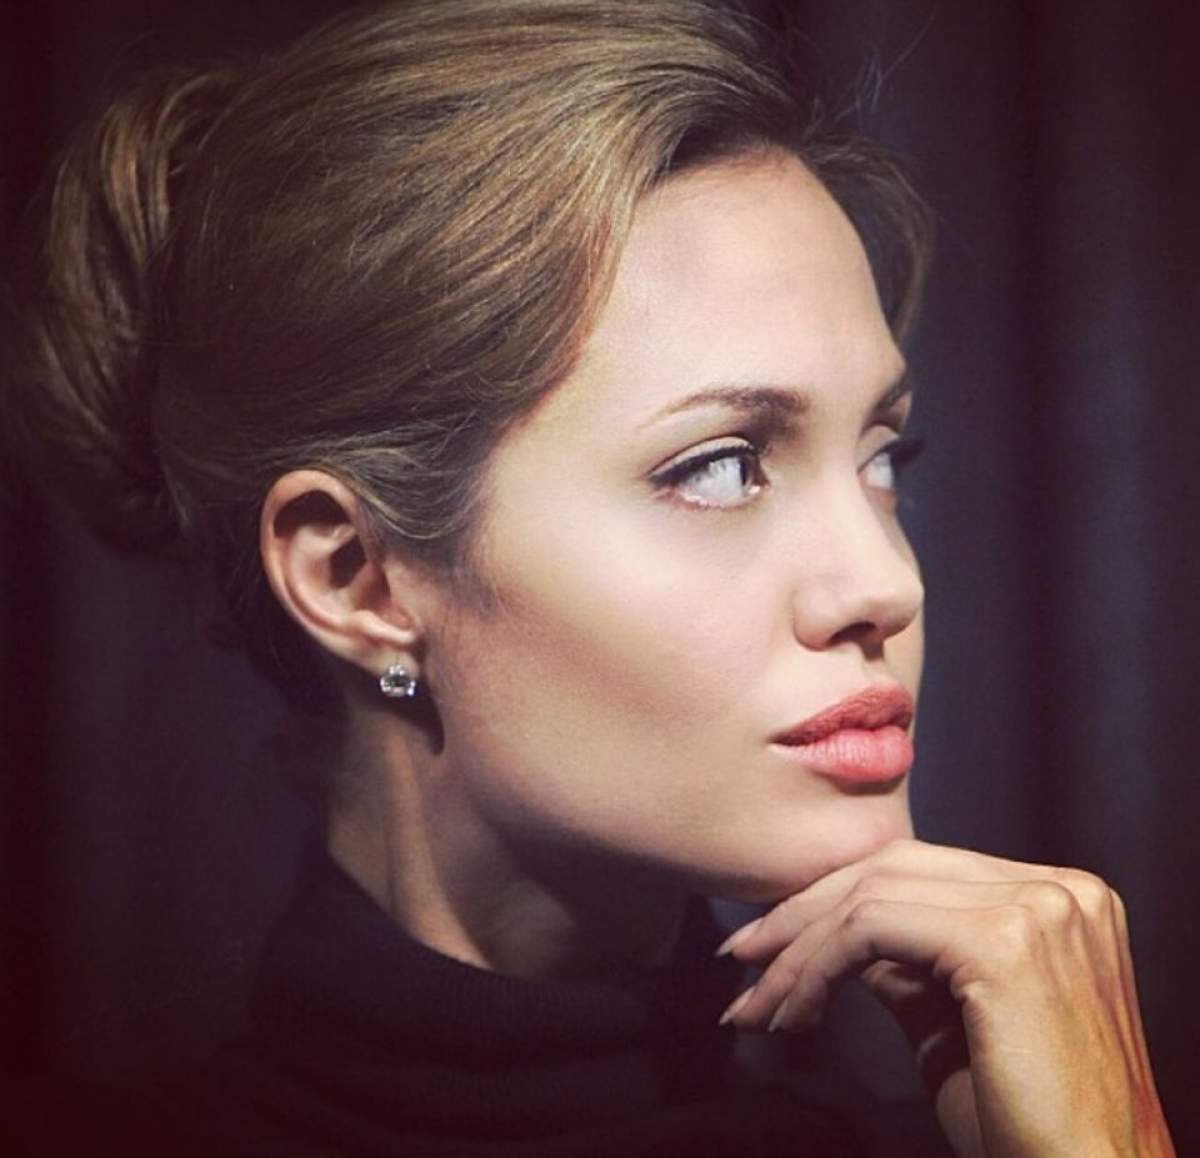 Veste tragică pentru Angelina Jolie! Ce lovitură dureroasă a primit actriţa după ce şi-a extirpat sânii de teama cancerului